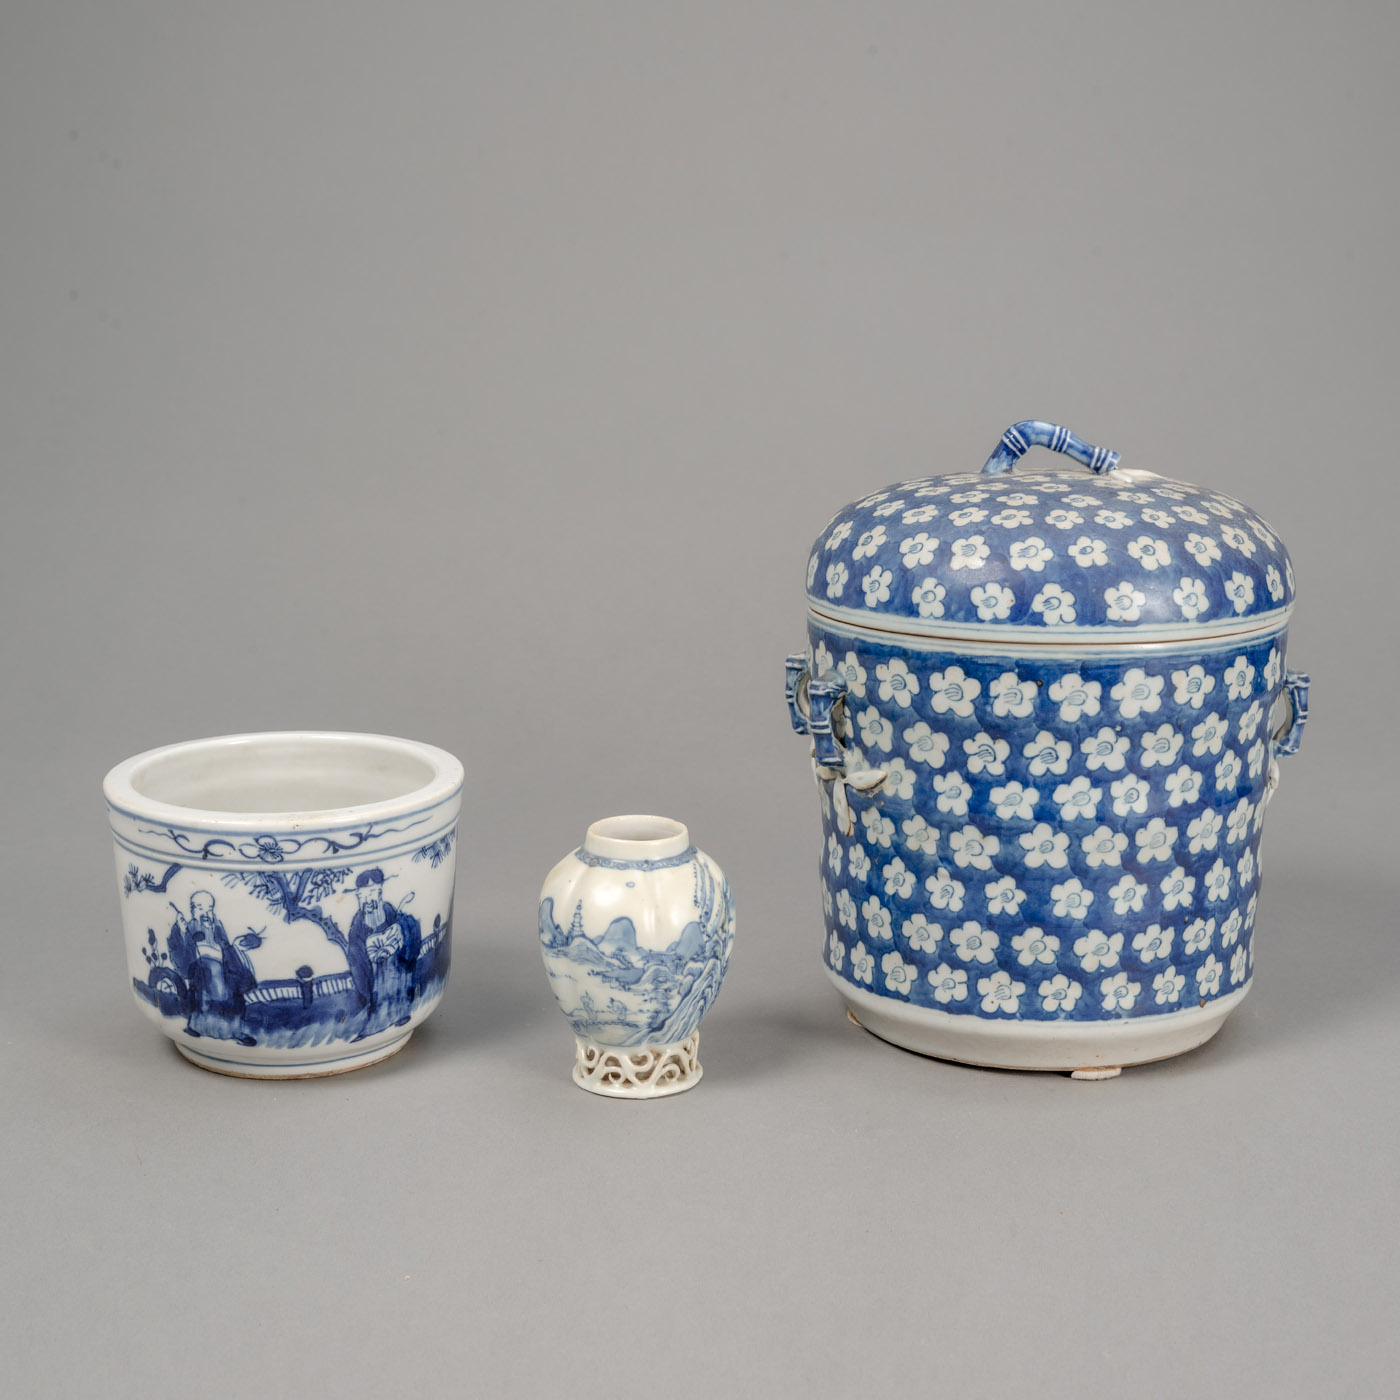 <b>Deckeldose mit Bambus- und Prunusdekor, Weihrauchbrenner und kleine Vase aus Blau-weiß-Porzellan</b>